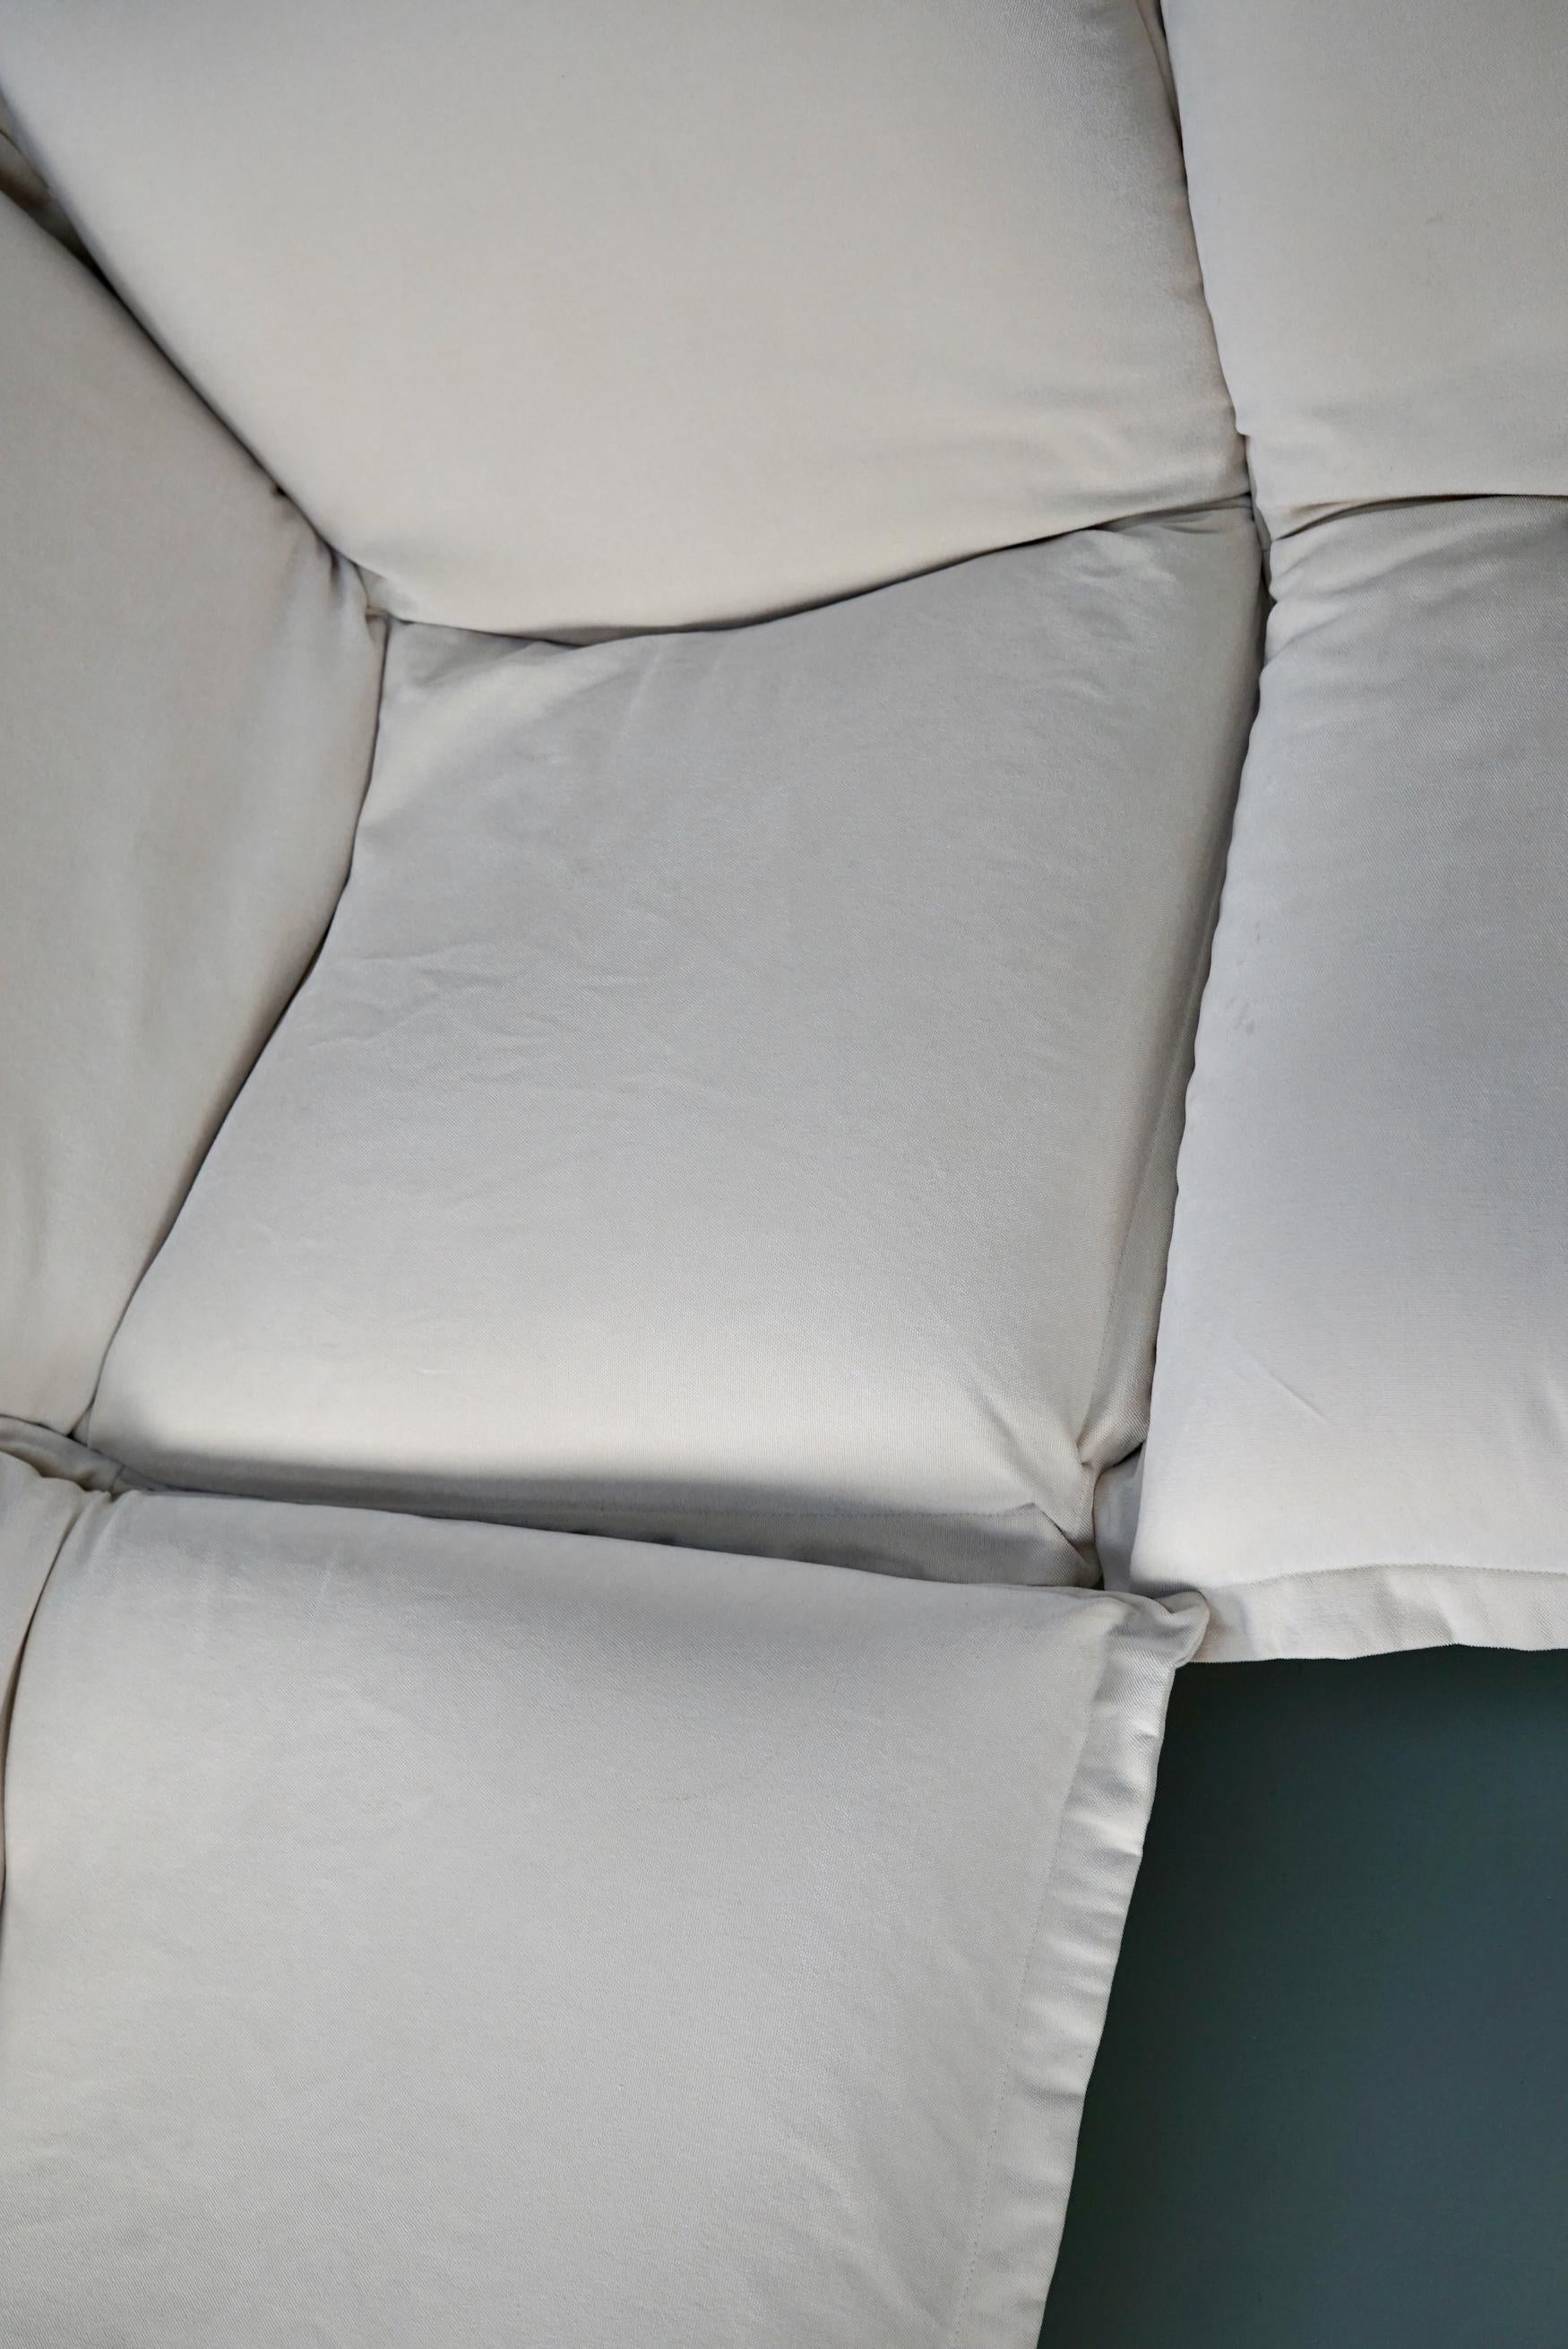 Calin Corner Sofa Set by Pascal Mourgue for Cinna / Ligne Roset - 4 seater 5